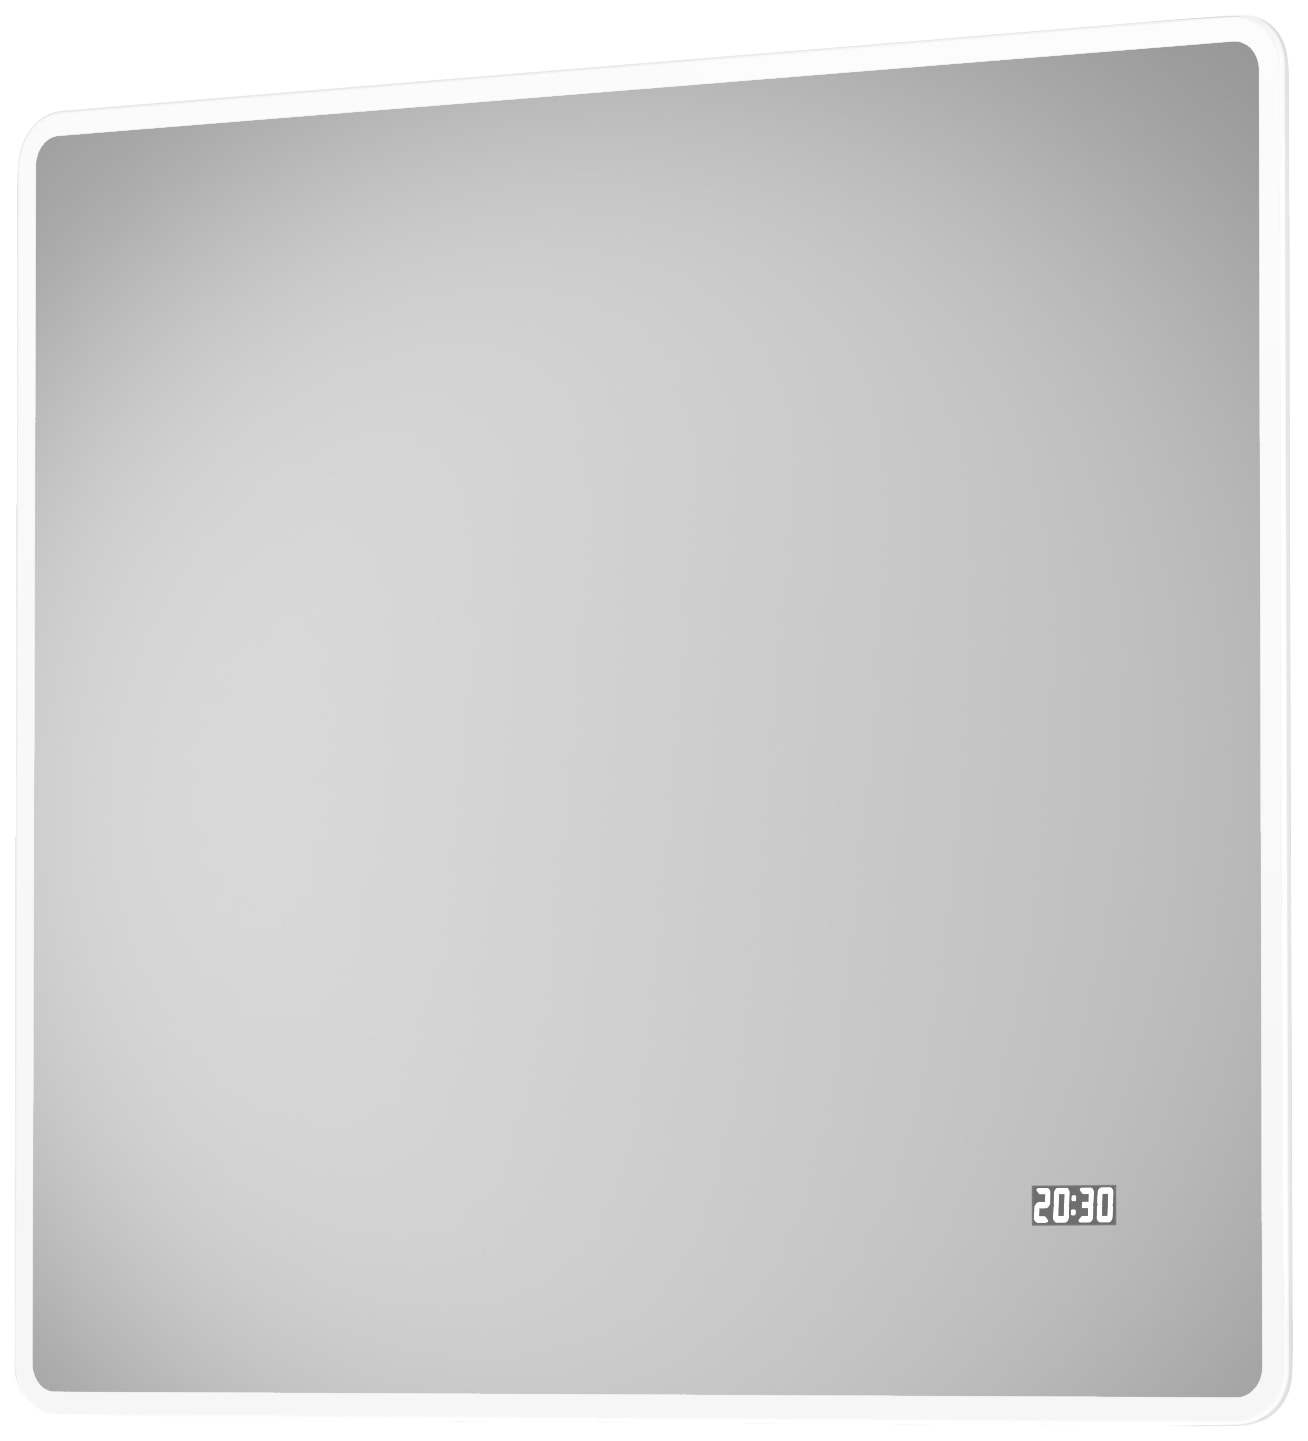 Badspiegel »Sun«, BxH: 80x70 cm, energiesparend, mit Digitaluhr